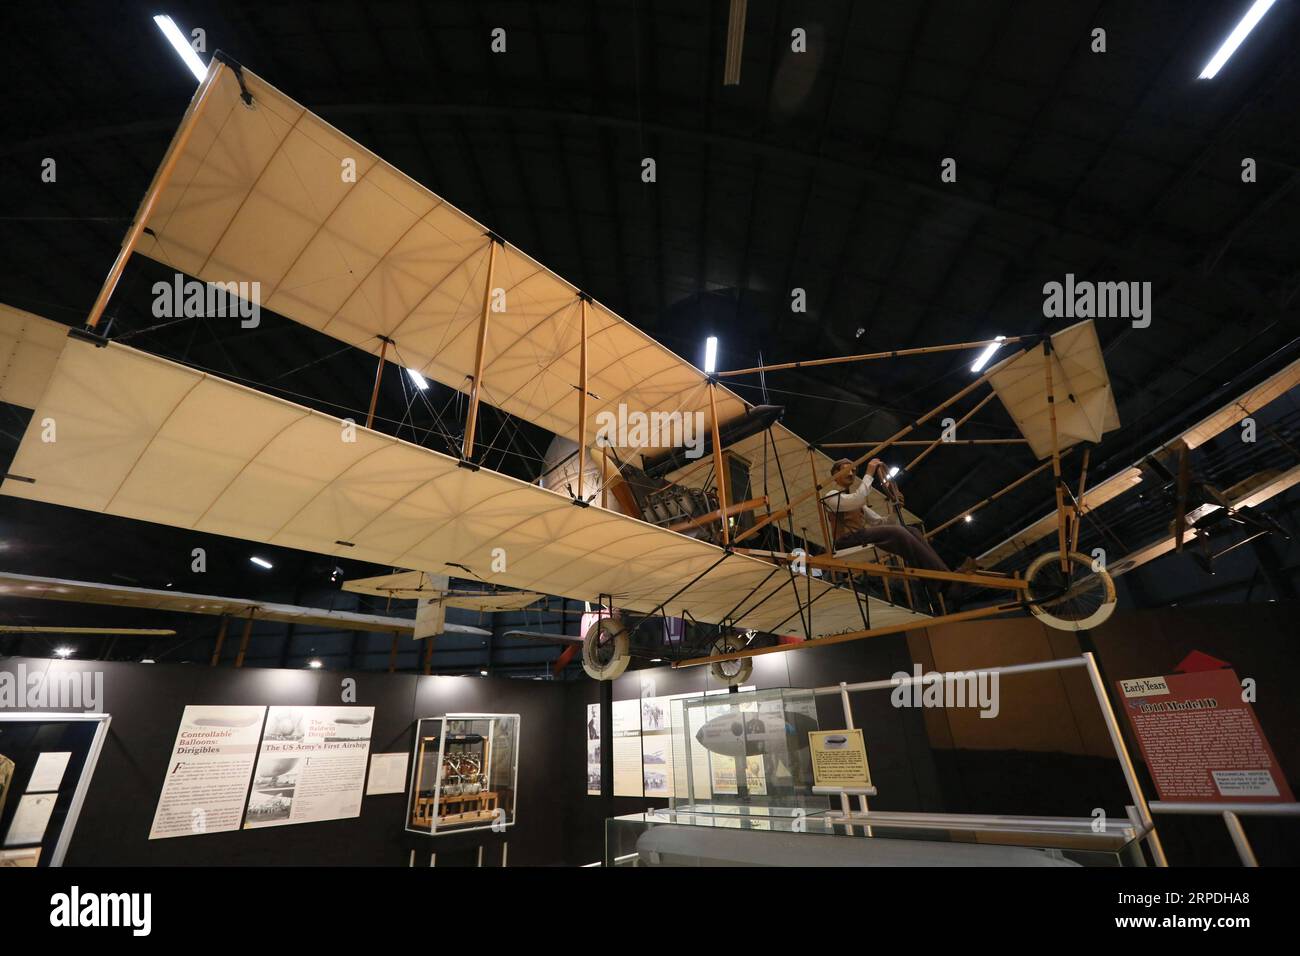 (190804) -- DAYTON (USA), 4. August 2019 -- Curtiss 1911 Model D ist am 24. Juli 2019 in der Early Years Gallery des National Museum of the U.S. Air Force in Dayton, Ohio, USA zu sehen. Dayton, Ohio, ist die Heimatstadt der Wright-Brüder, Erfinder von Flugzeugen. In etwa hundert Jahren nach der Erfindung ist Dayton als Wiege der Luftfahrt bekannt und wurde zu einem Luftfahrtzentrum in den staaten. Der Dayton Aviation Heritage National Historical Park und das National Museum of the U.S. Air Force wurden hier gegründet, was Dayton zu einem wichtigen Ort macht Stockfoto